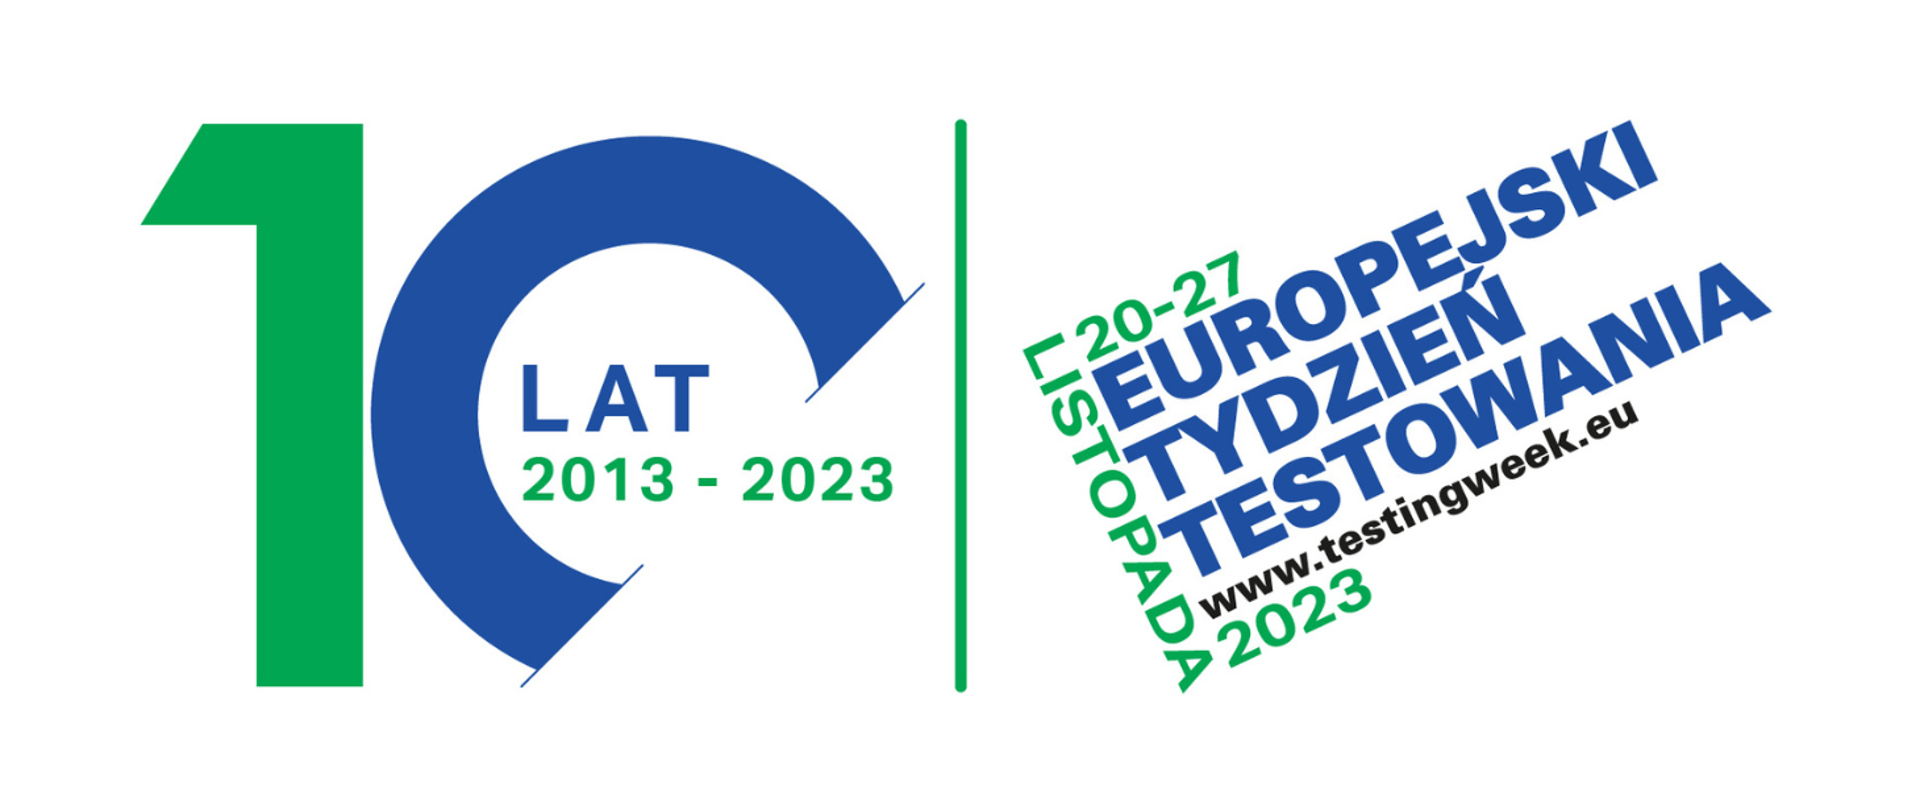 Miniatura na stronę – 10 lat 2013-2023 Europejski Tydzień Testowania 20-27 listopada 2023 www.testingweek.eu